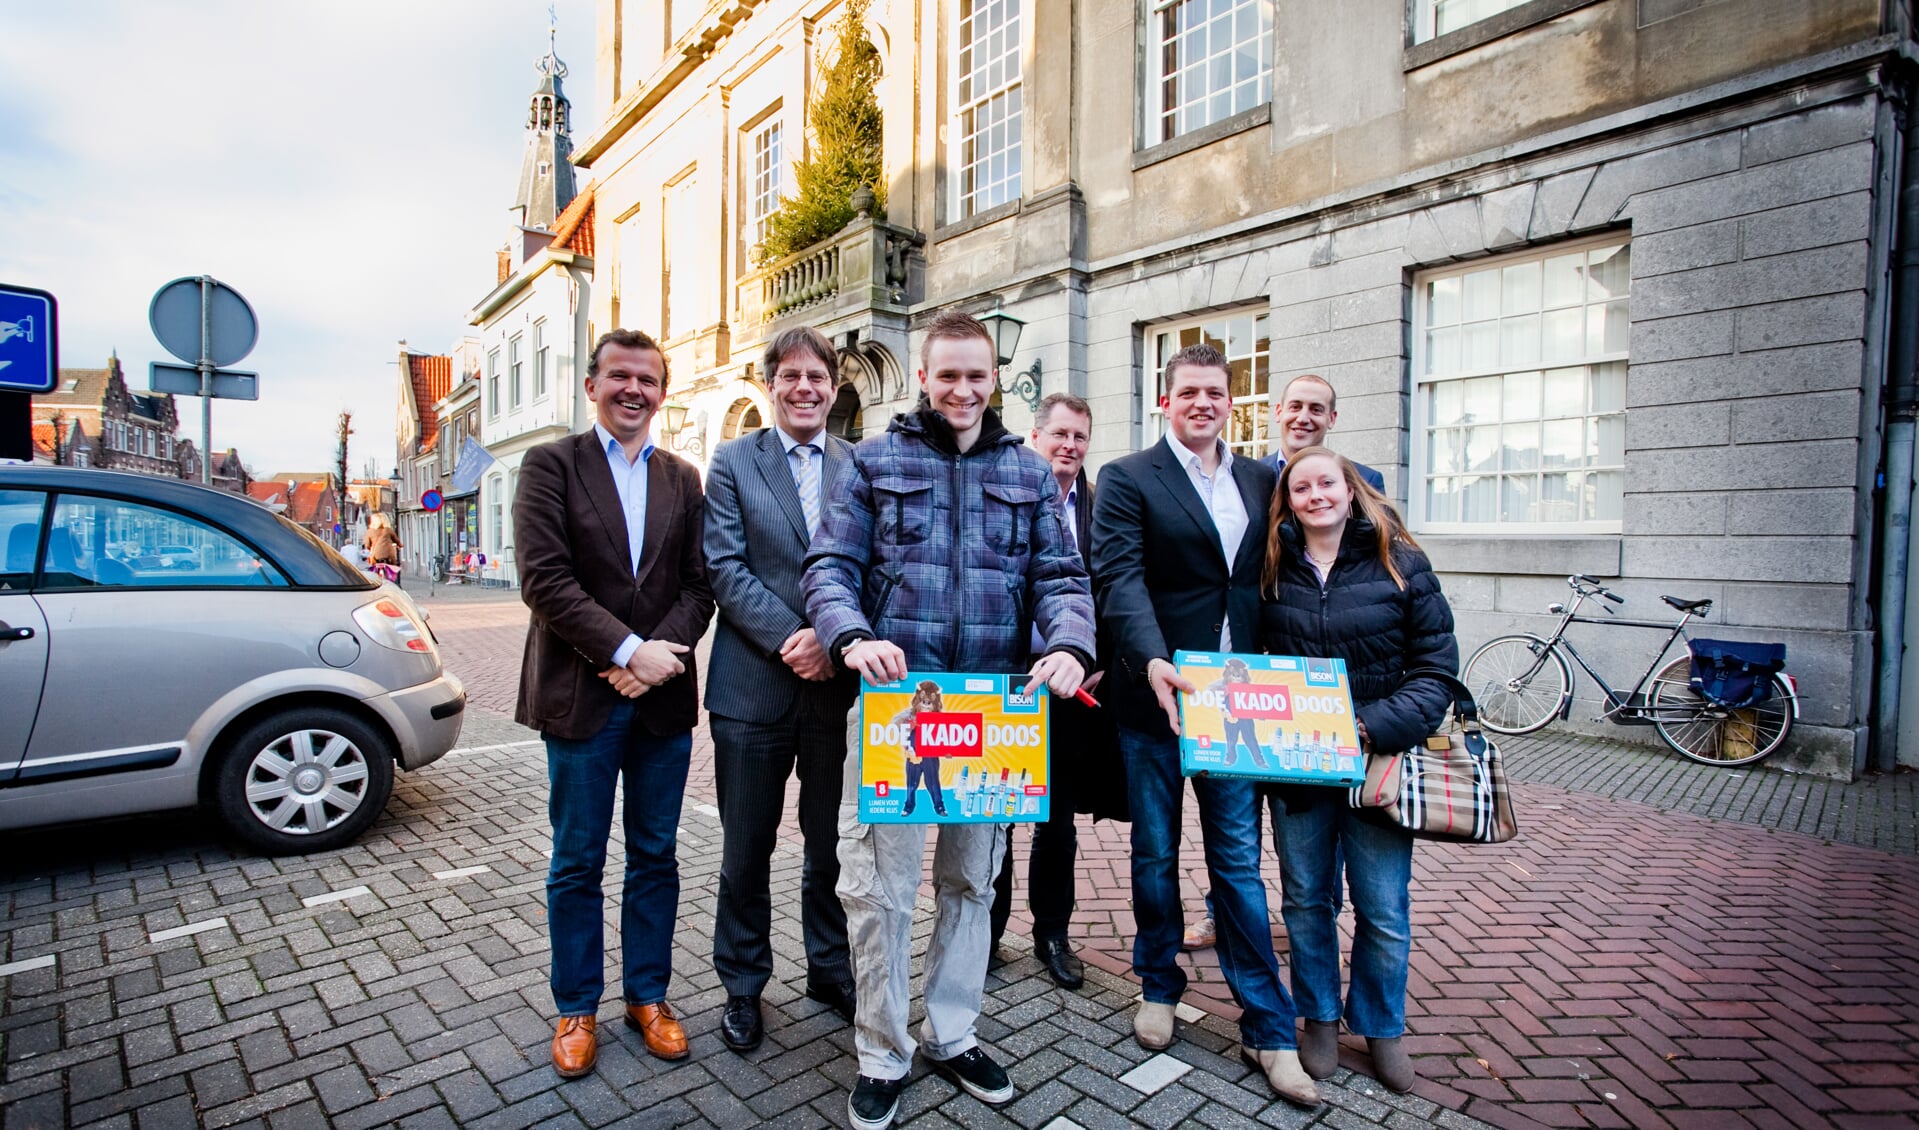 De eerste groep kopers die in 2012 in Weesp een starterslening kregen